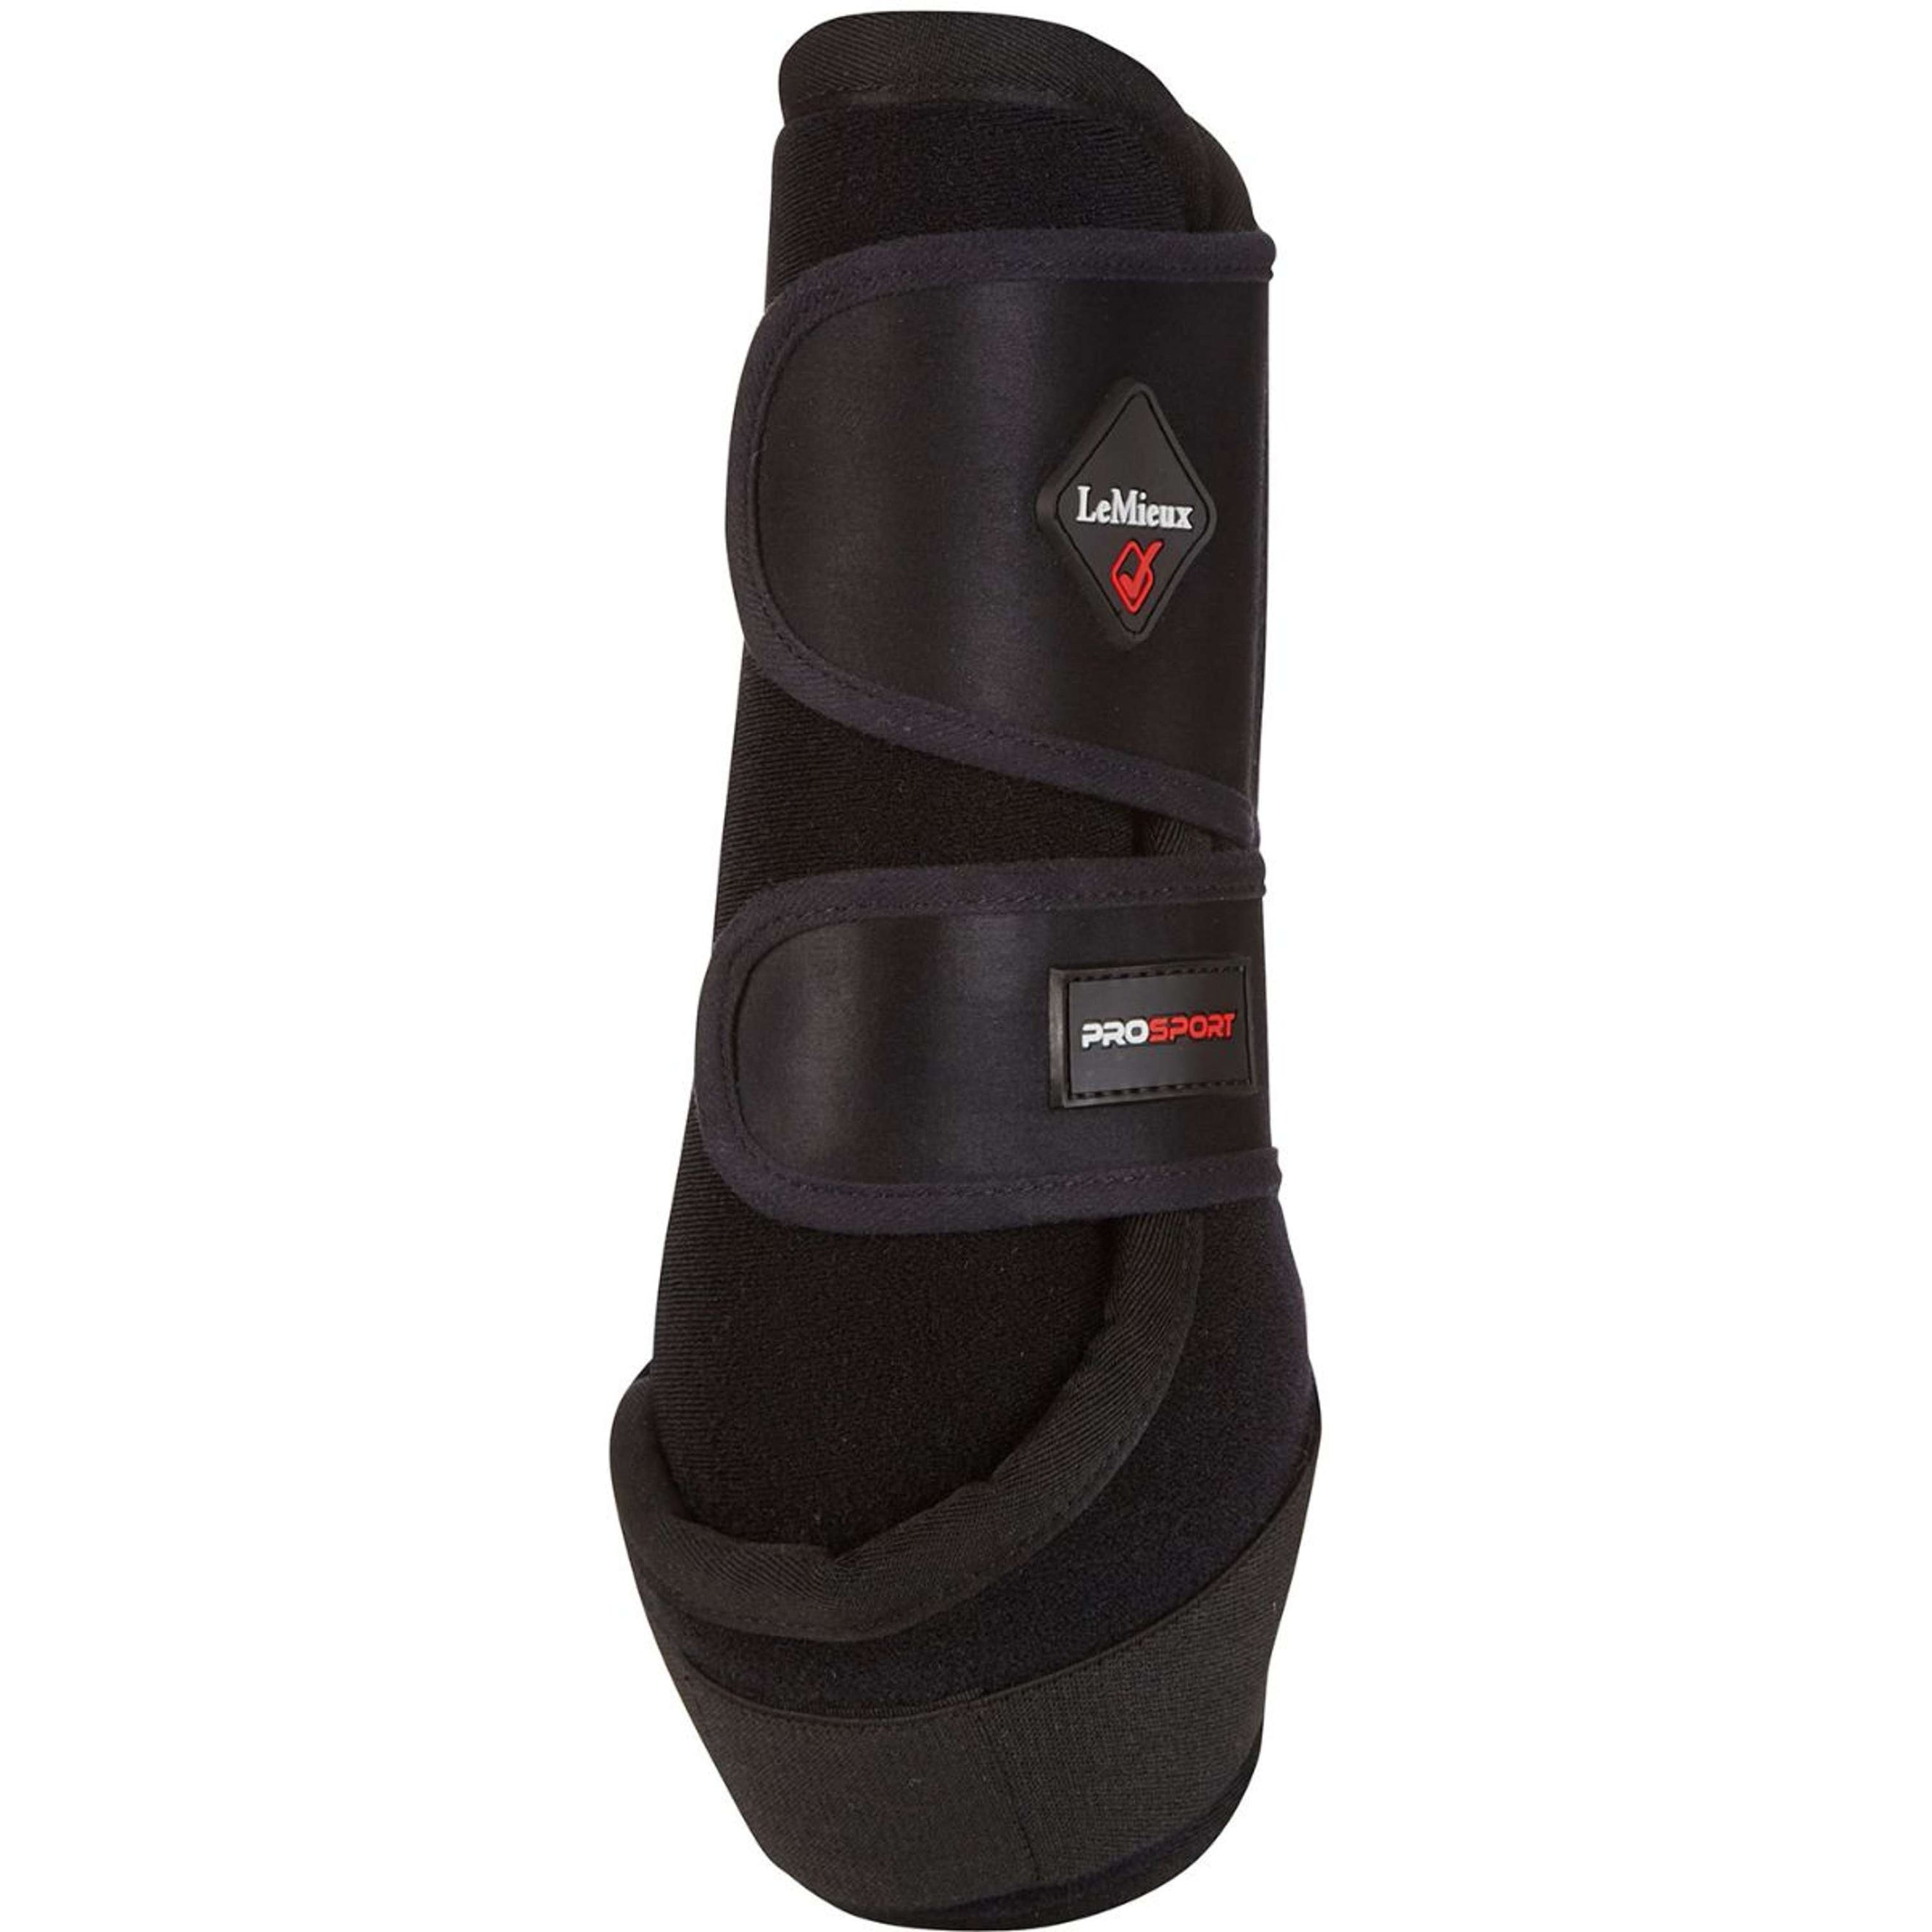 LeMieux Boots Ultra Support Noir